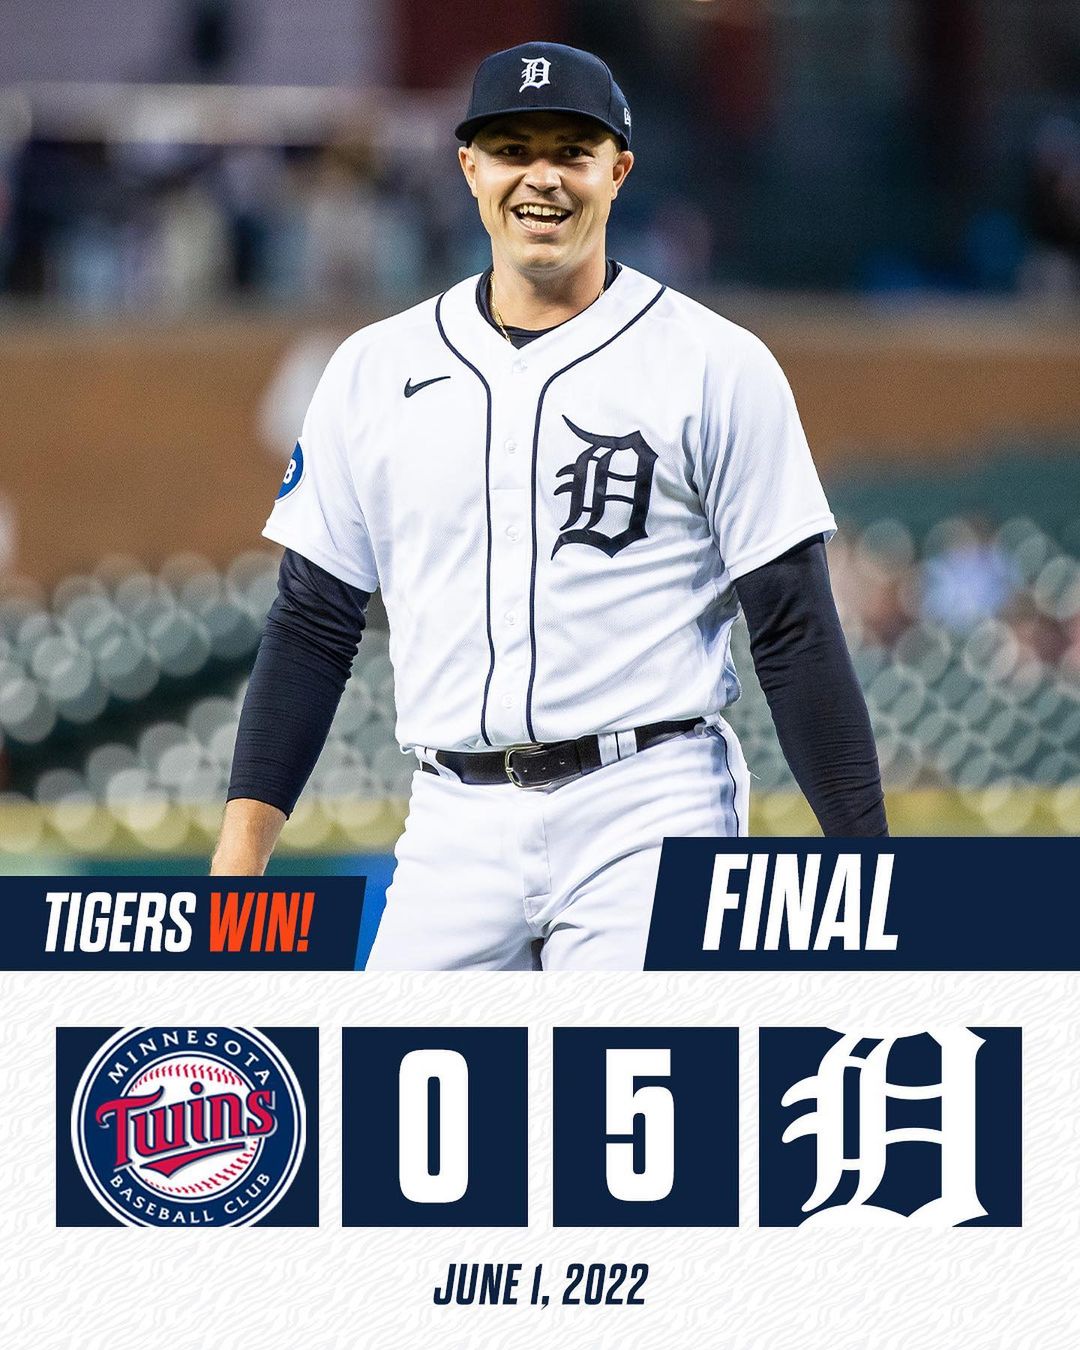 Series win secured! #TigersWin...